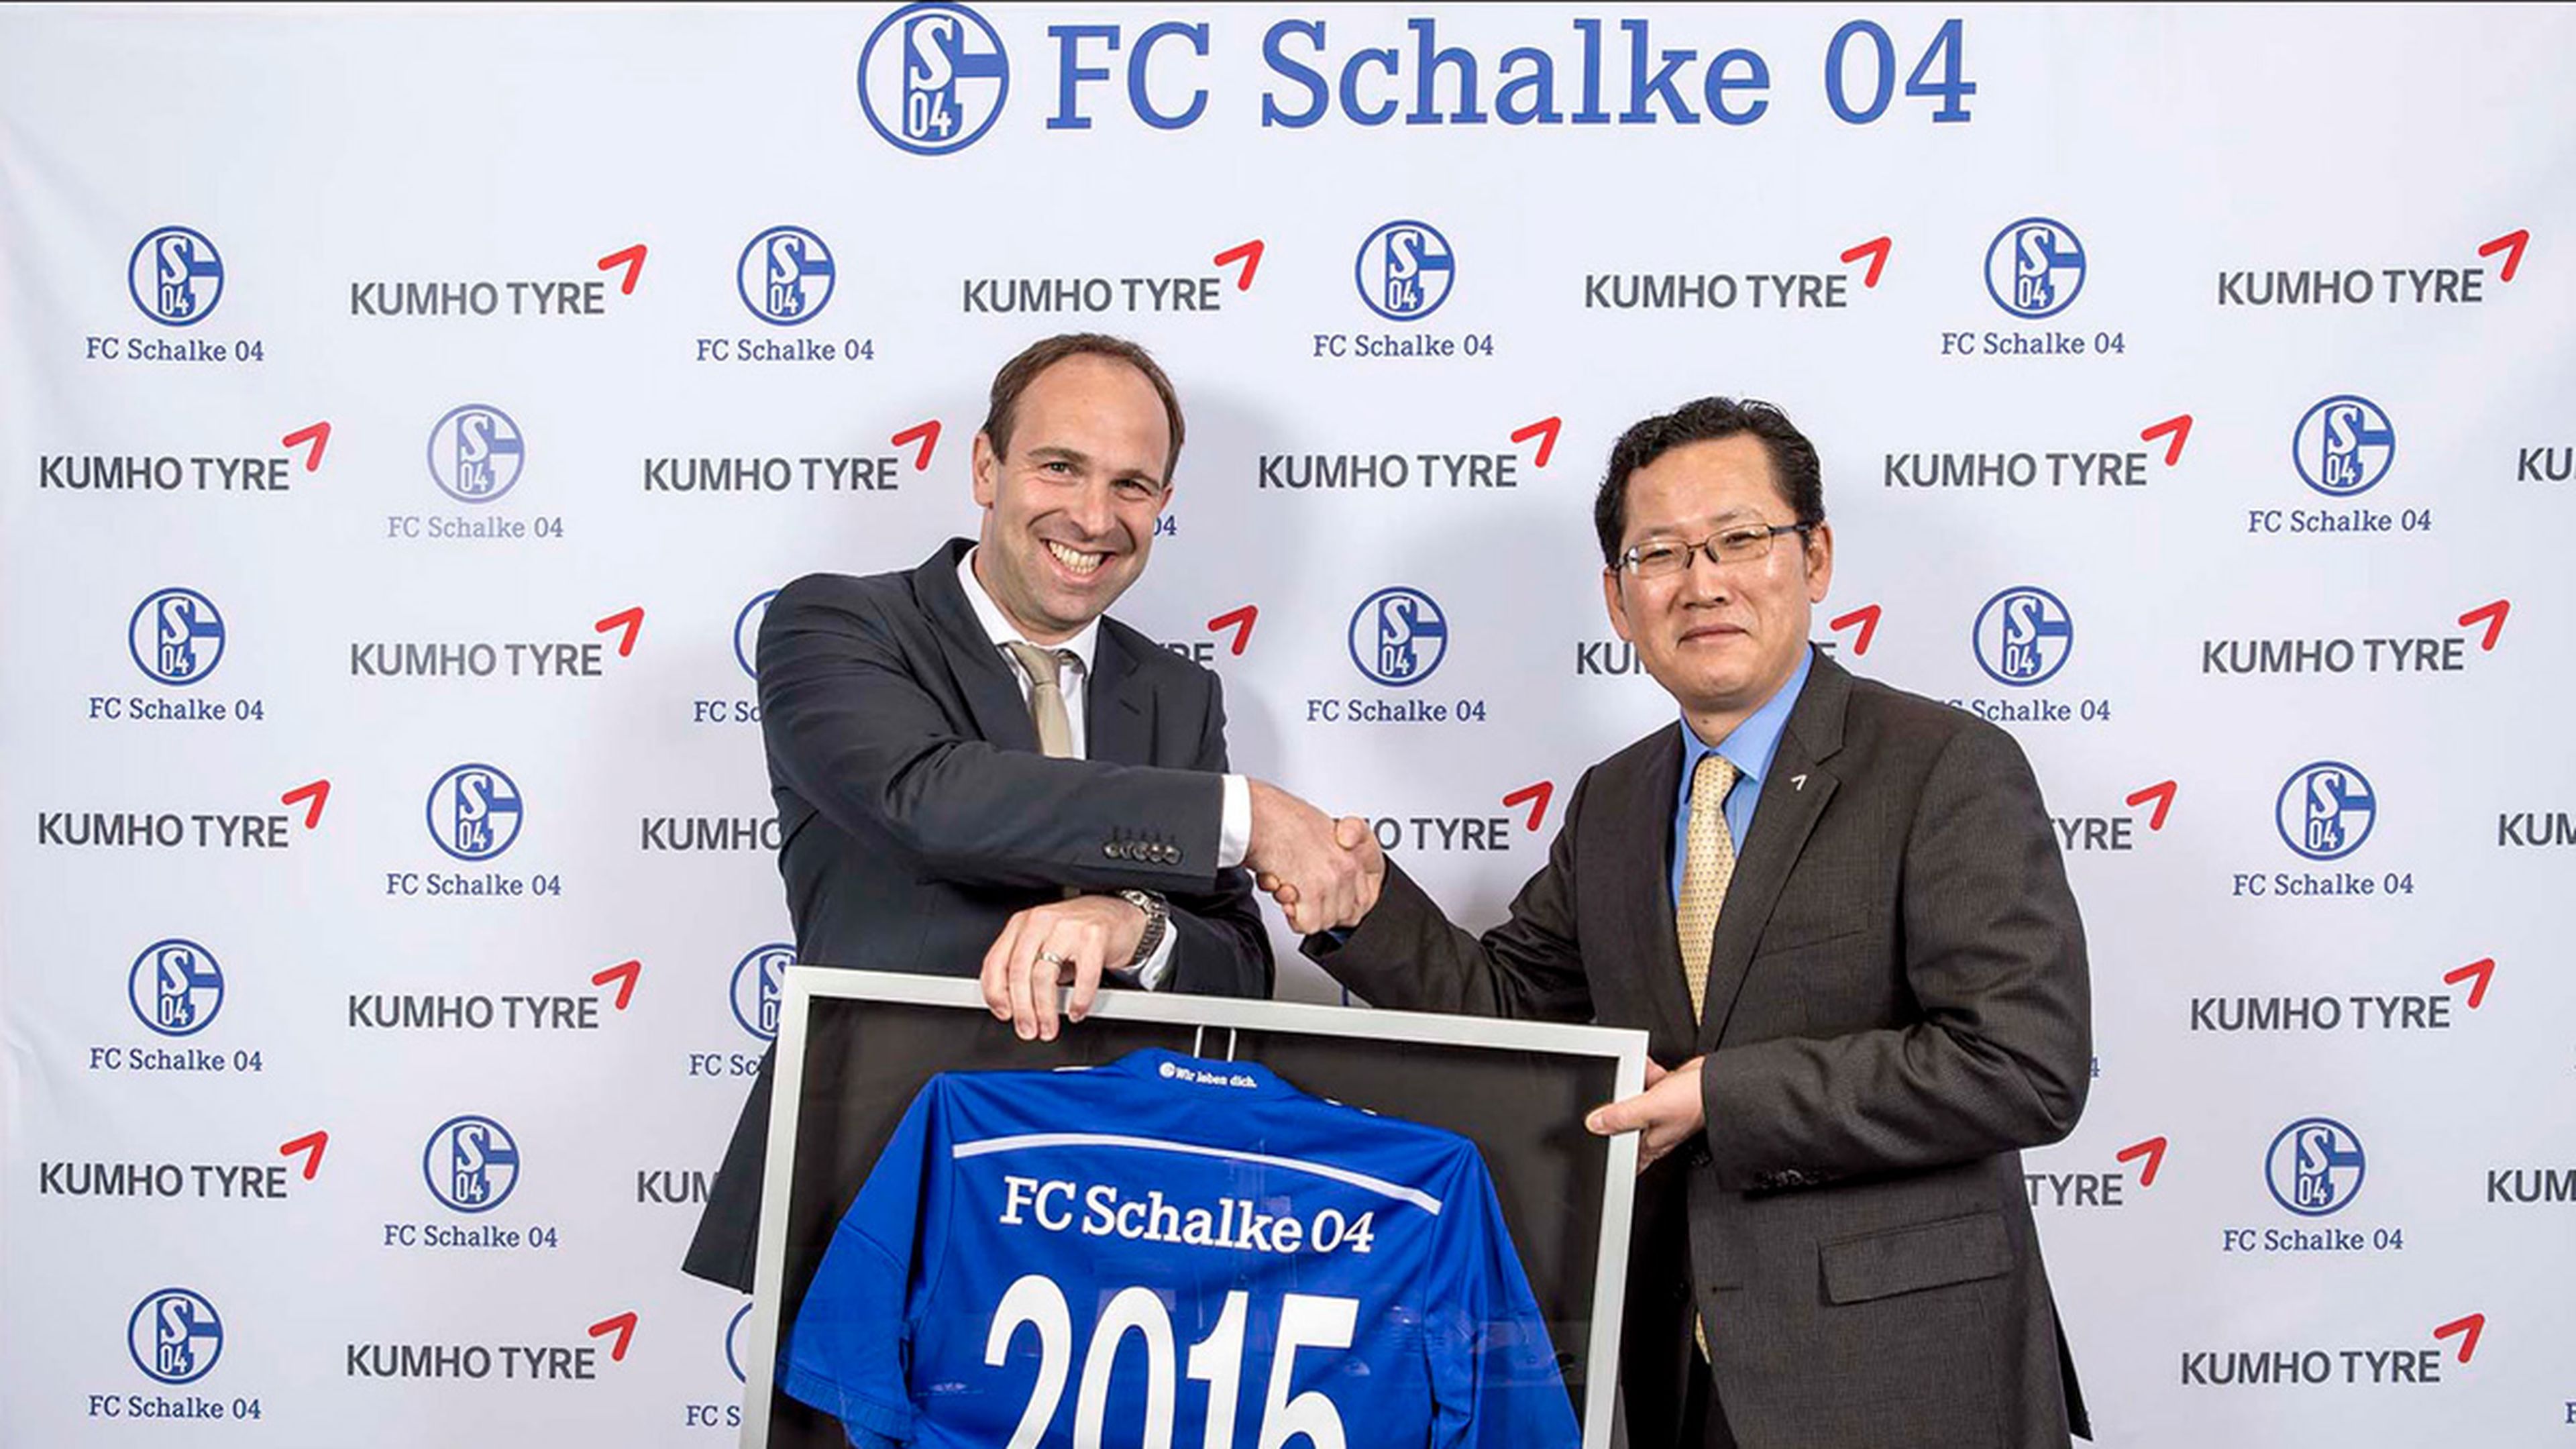 Kumho Tyre, patrocinador del FC Schalke 04